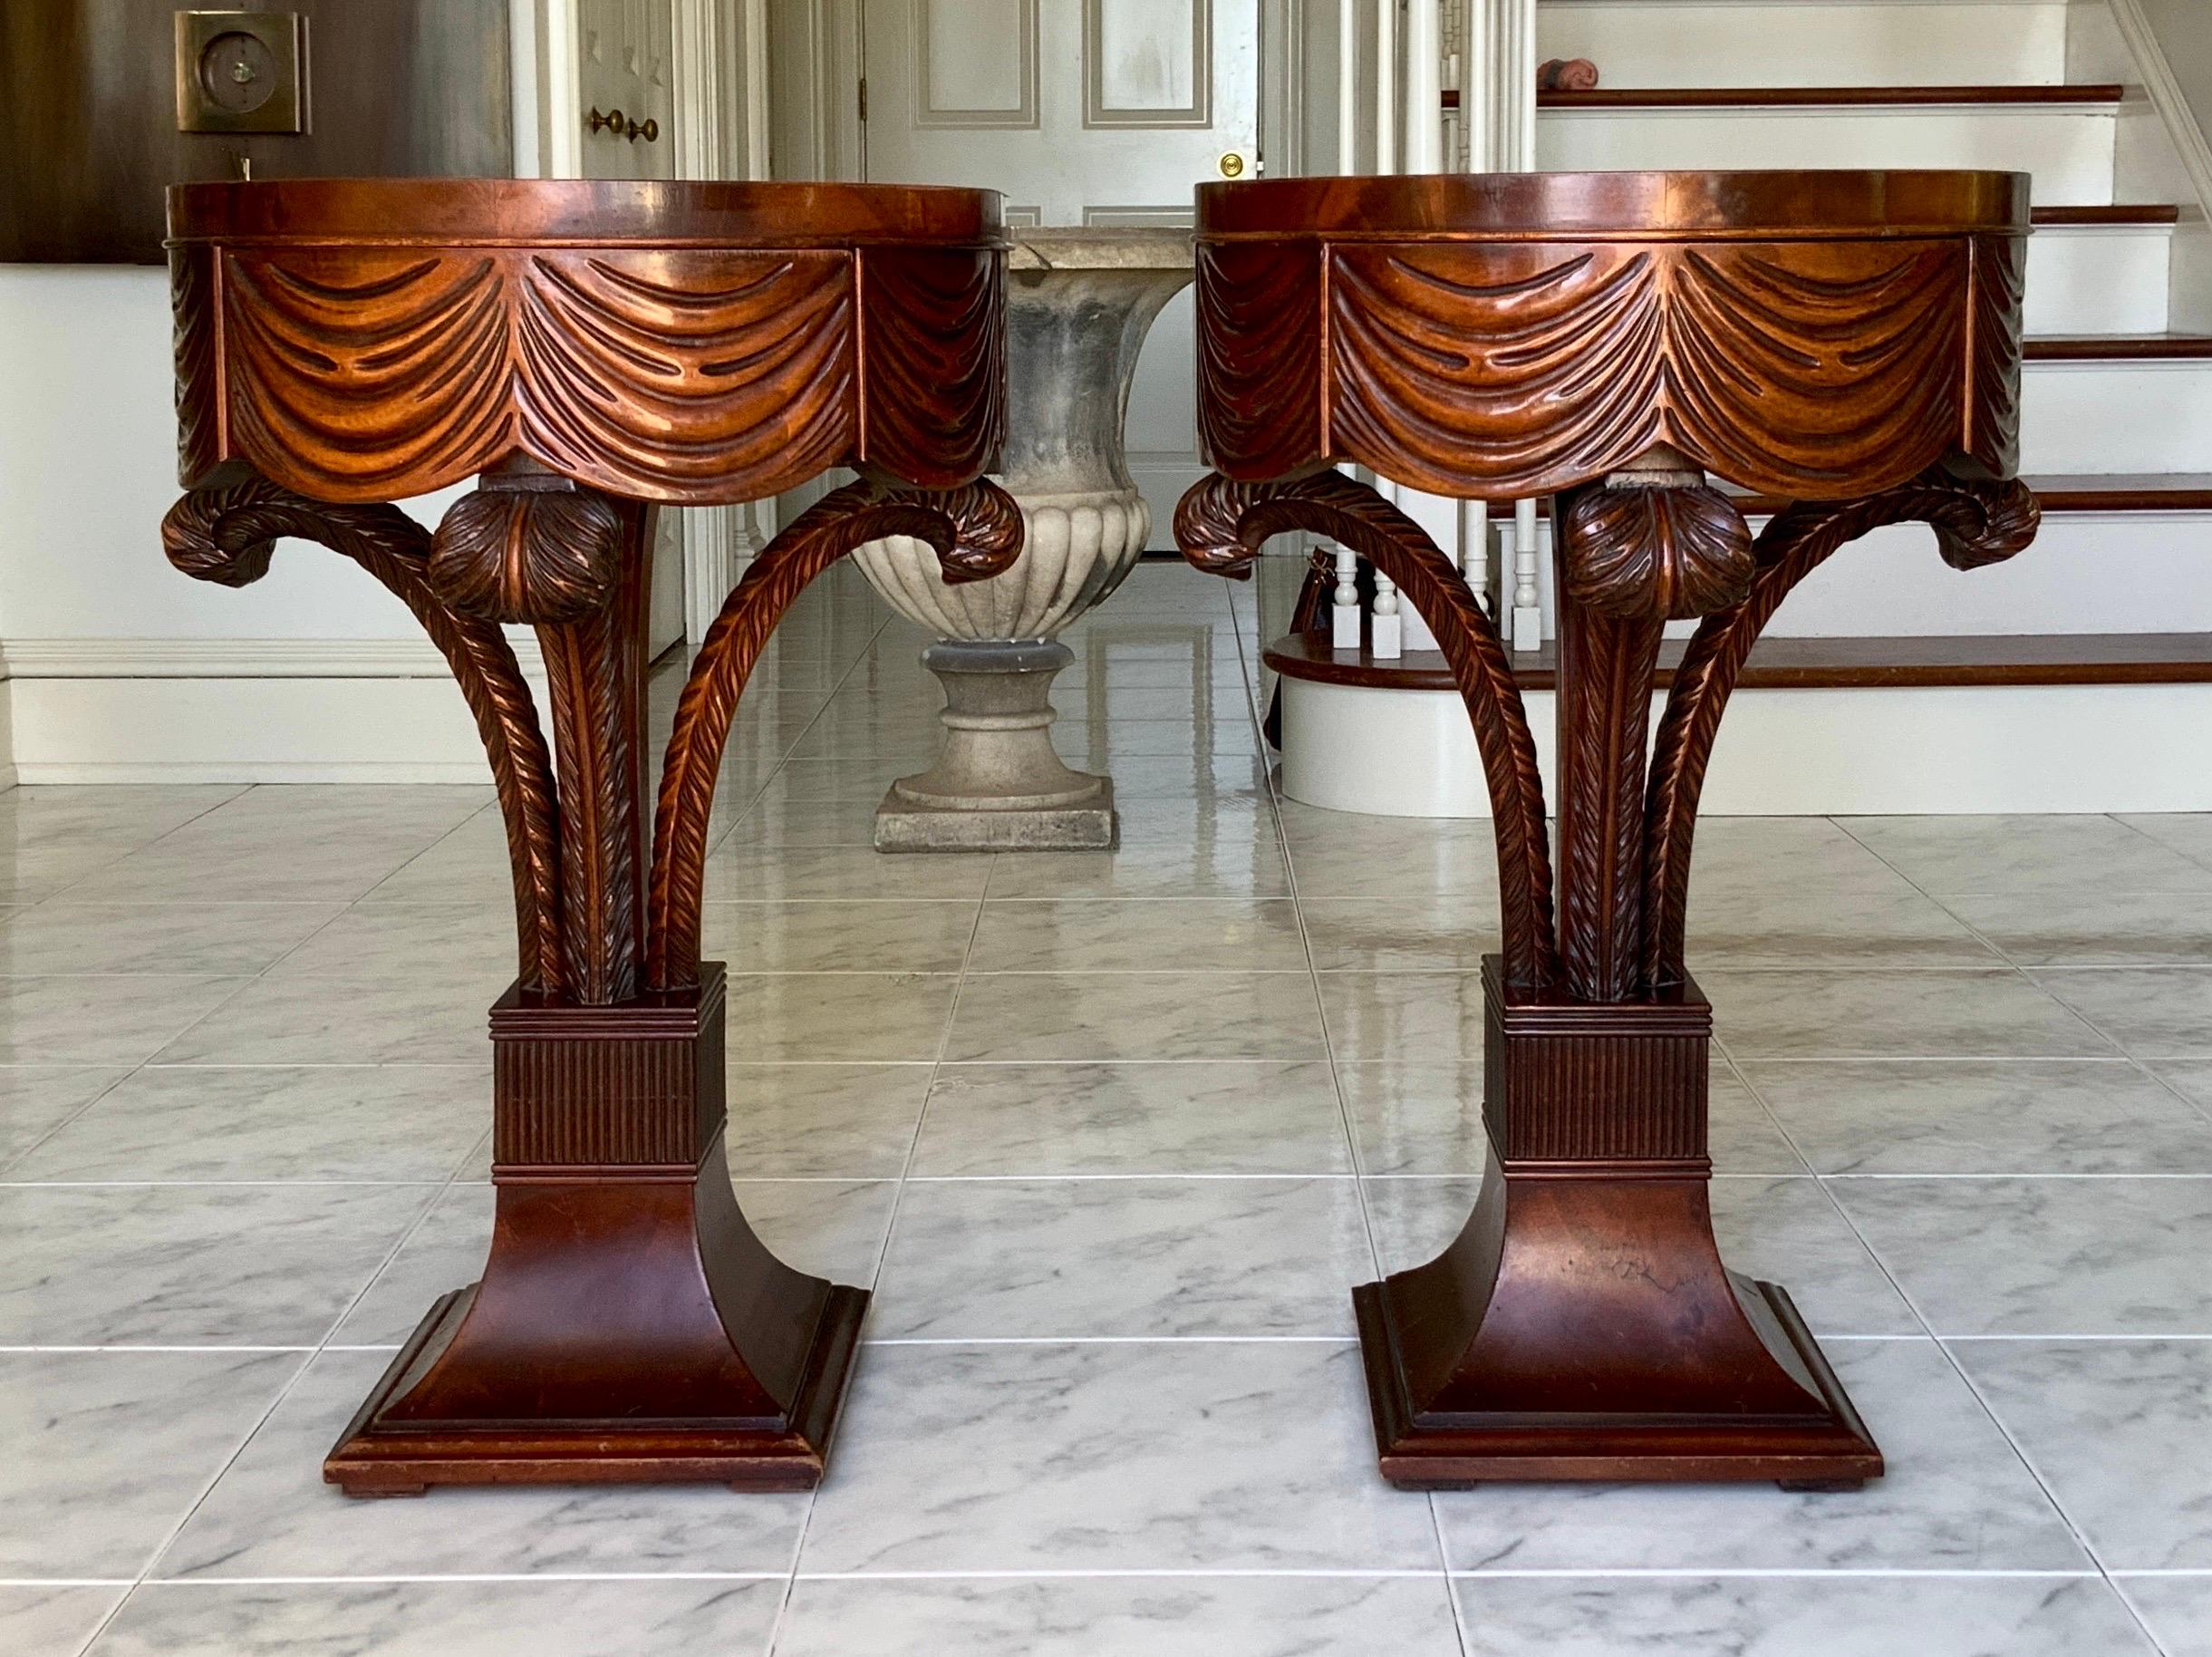 Une magnifique paire de tables d'appoint en plume Grosfeld House des années 1940.
Fabuleux ensemble de panaches en bois d'acajou sculpté tenant un plateau drapé sculpté avec un tiroir caché. Le glamour de l'époque d'Hollywood Regency et la beauté